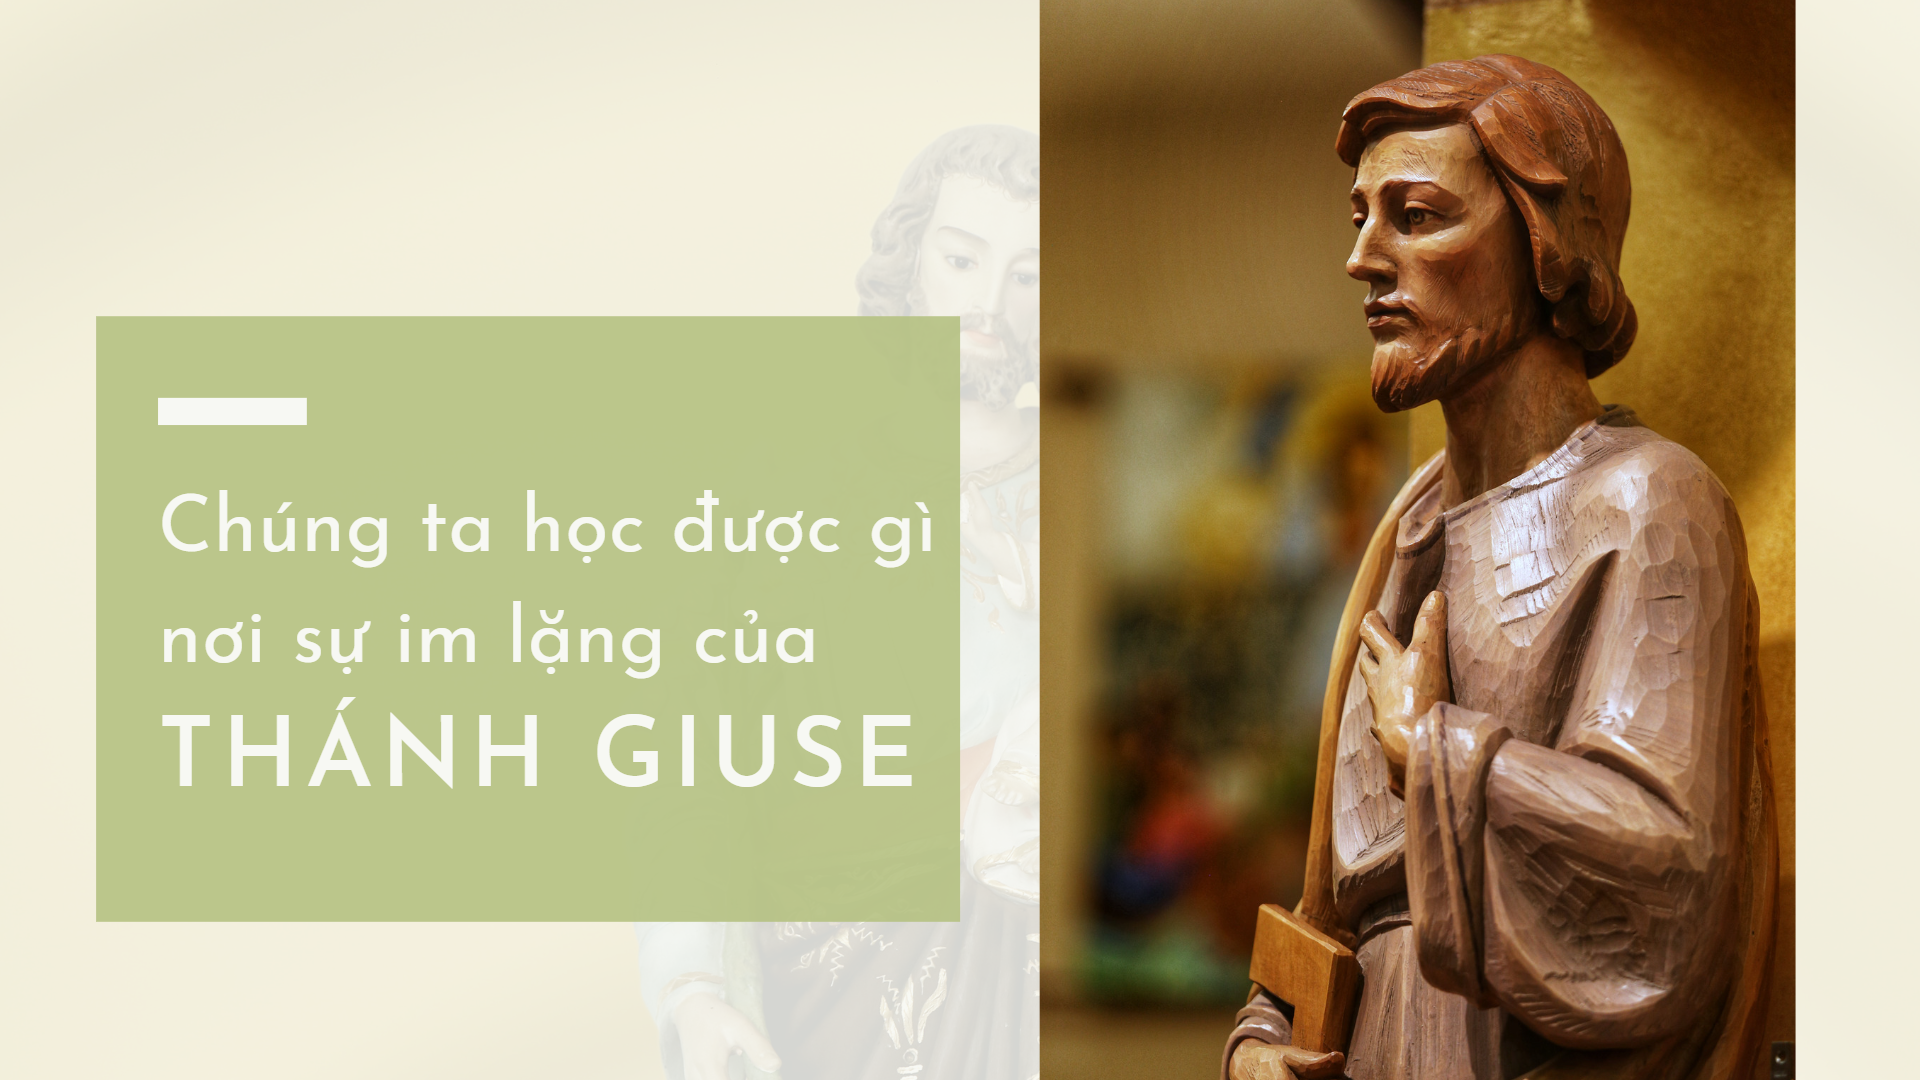 Chúng ta học được gì nơi sự im lặng của Thánh Giuse